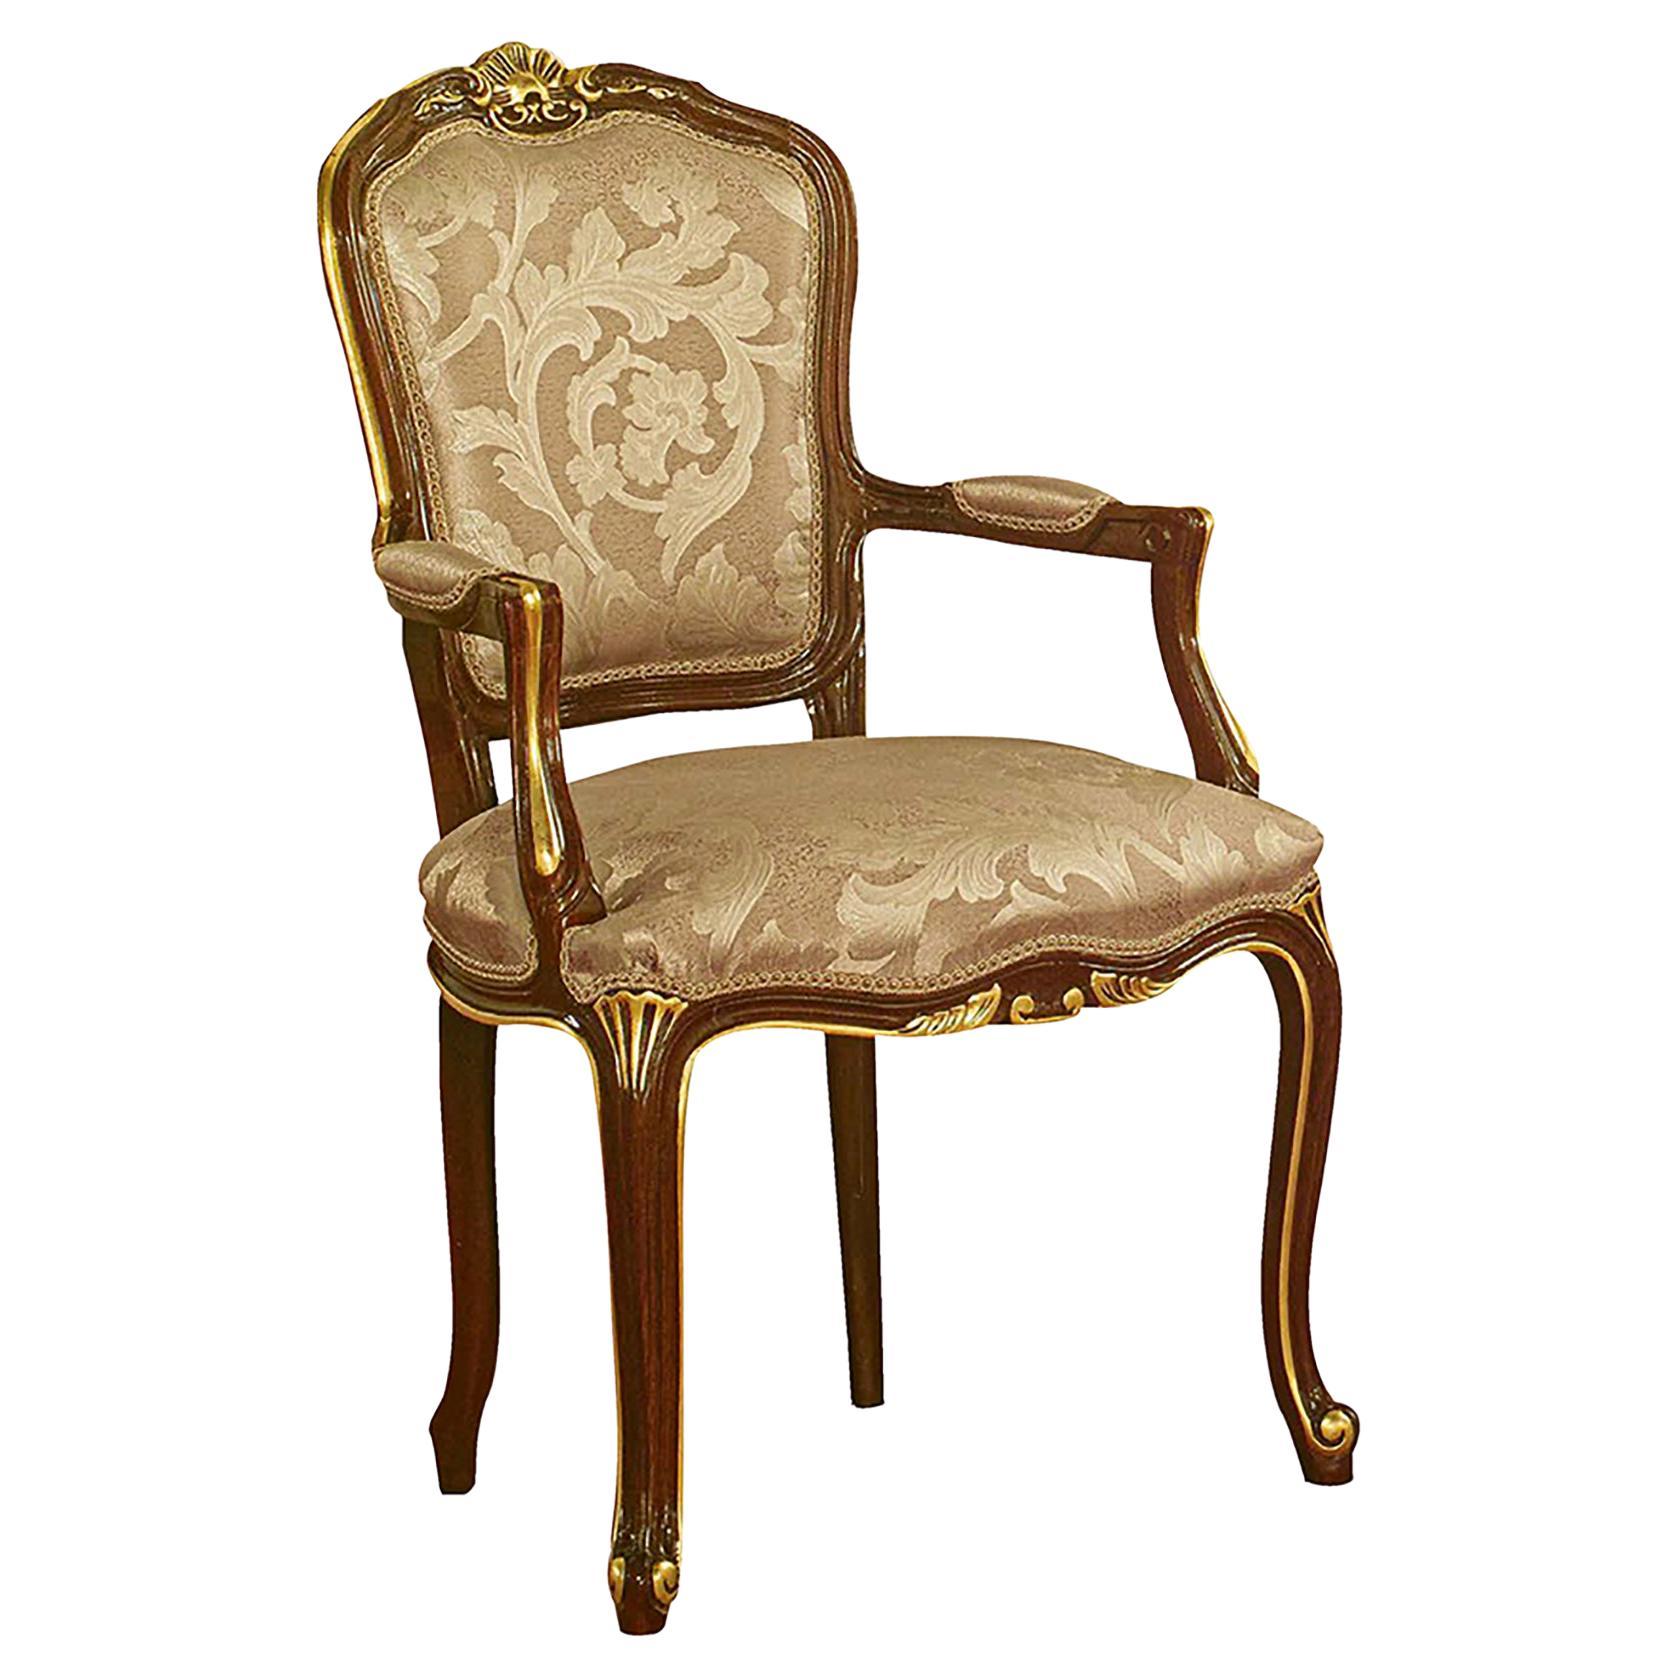 Chaise baroque avec accoudoir en bois Nature Wood Wood et finition feuille d'or